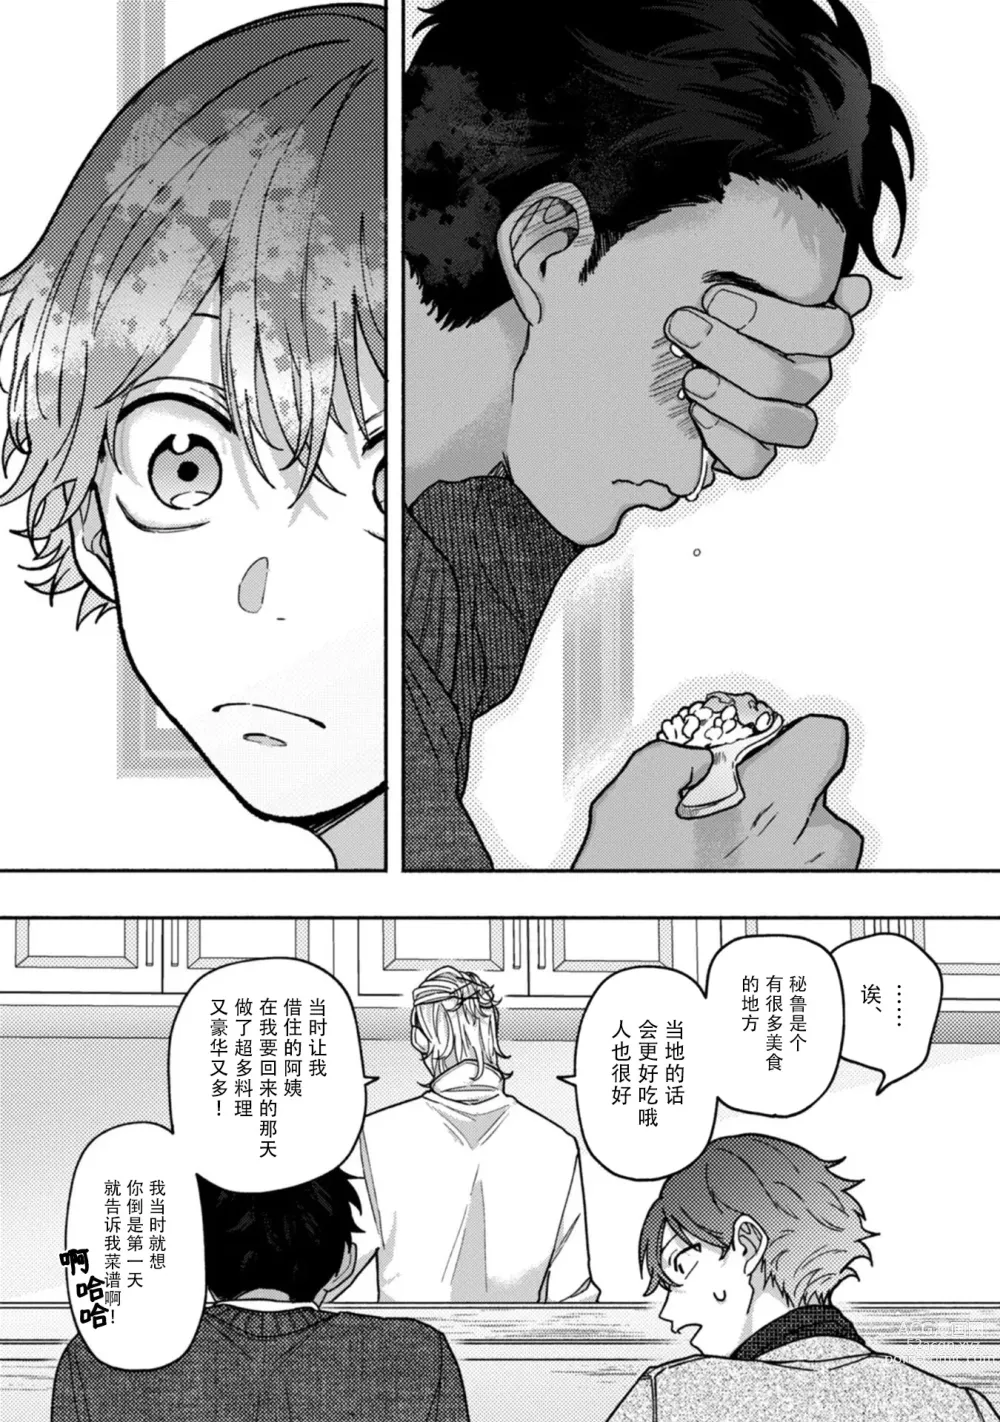 Page 22 of manga 谎言与黄色小刀